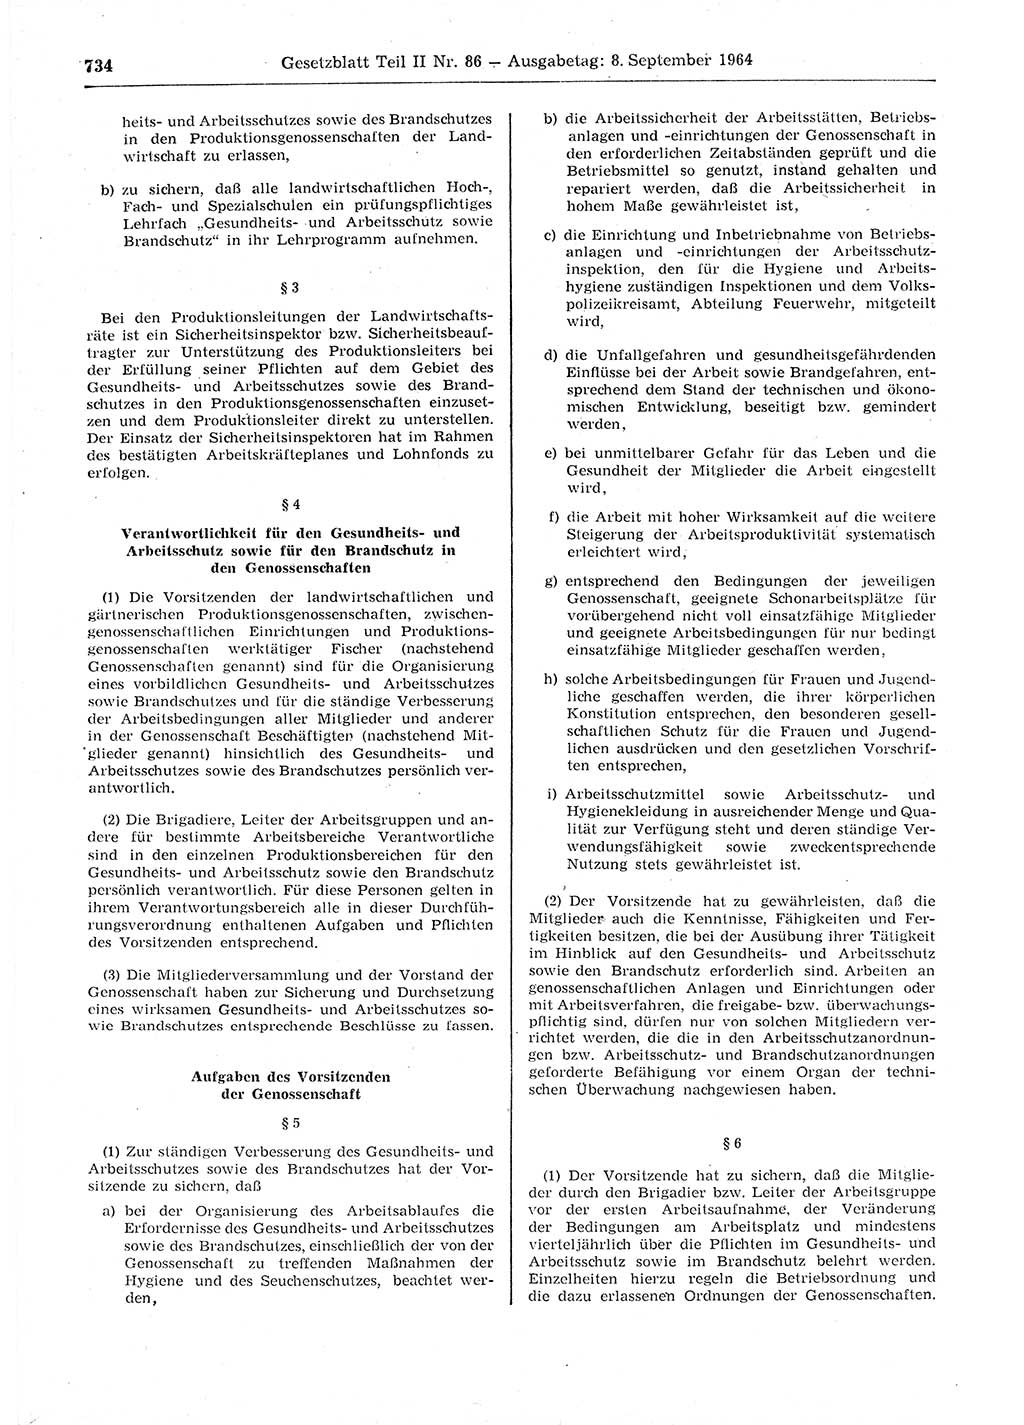 Gesetzblatt (GBl.) der Deutschen Demokratischen Republik (DDR) Teil ⅠⅠ 1964, Seite 734 (GBl. DDR ⅠⅠ 1964, S. 734)